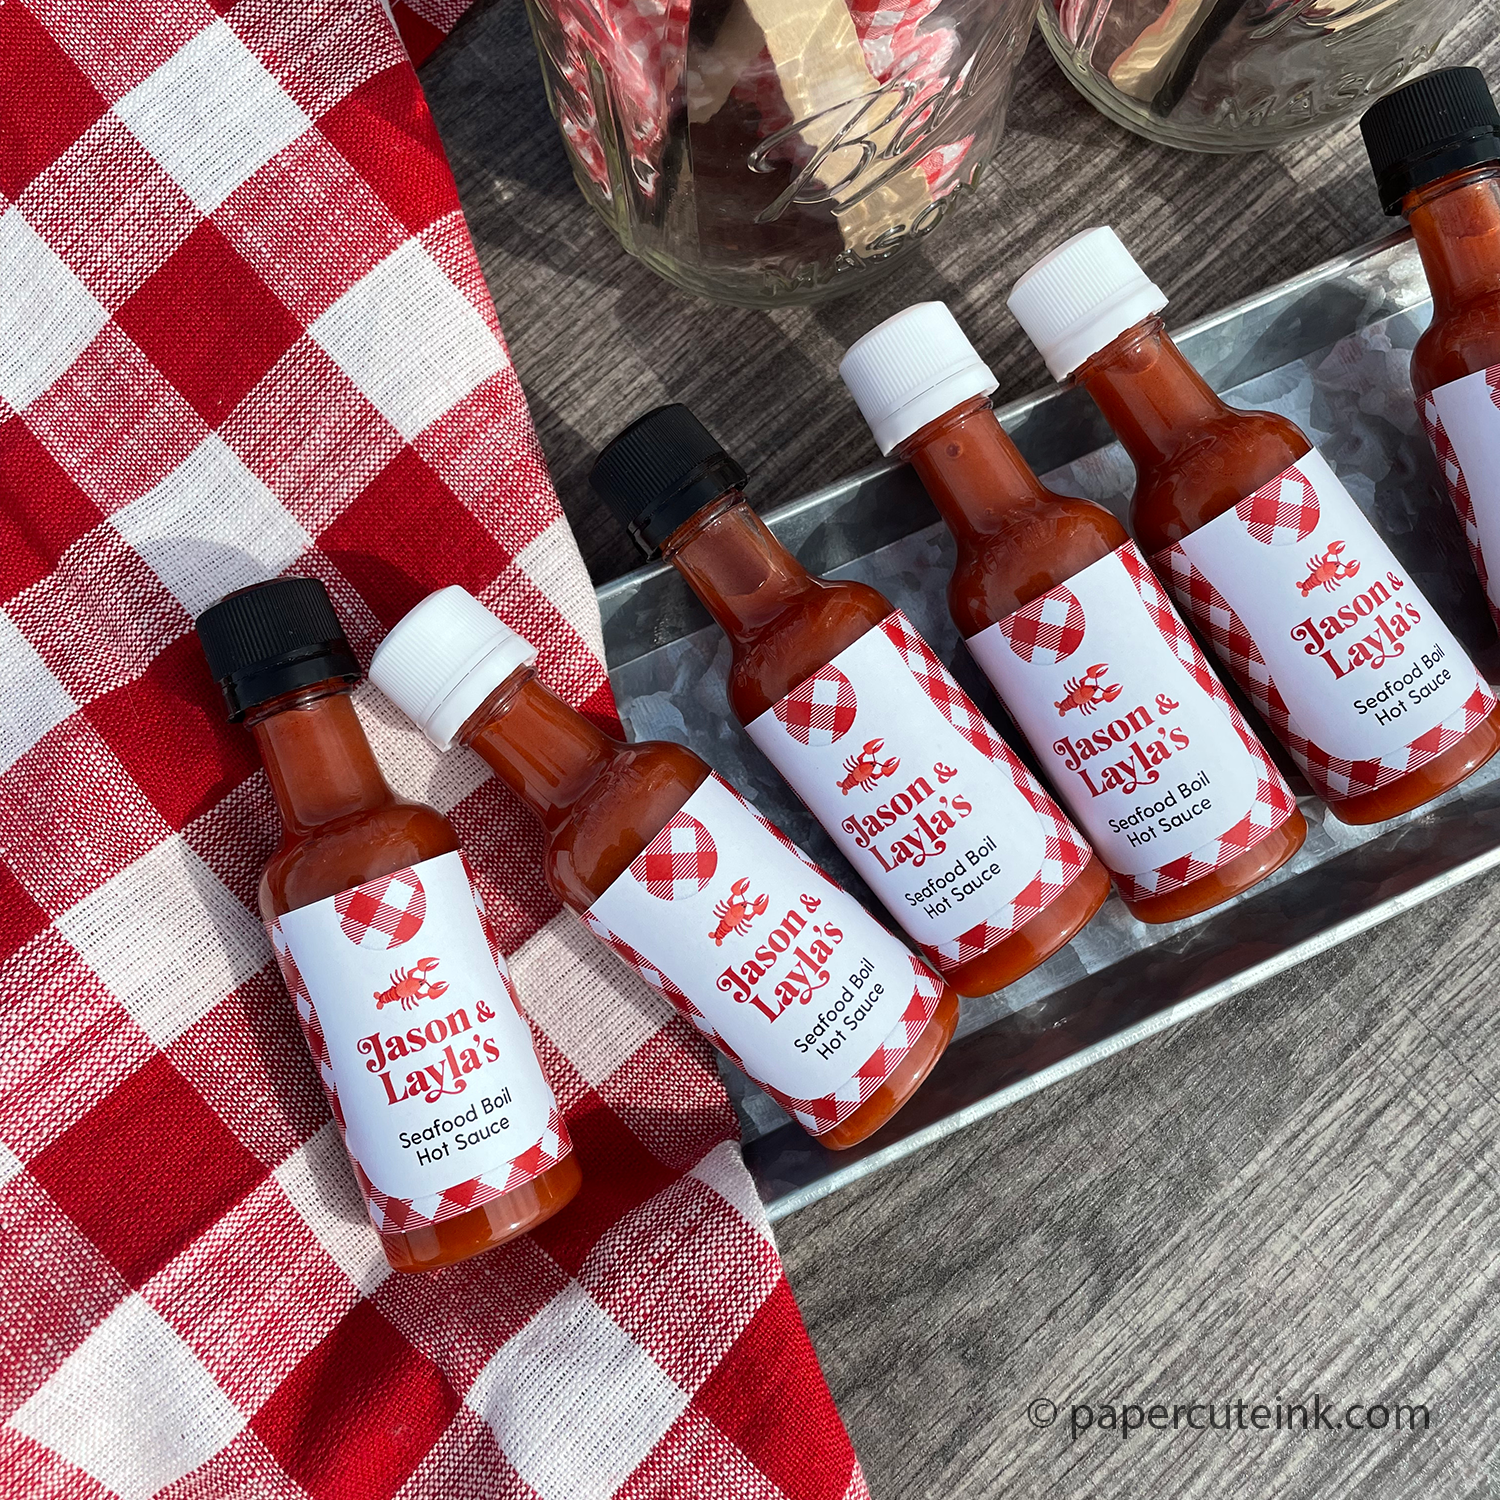 backyard crab boil miniature hot sauce bottle party favors